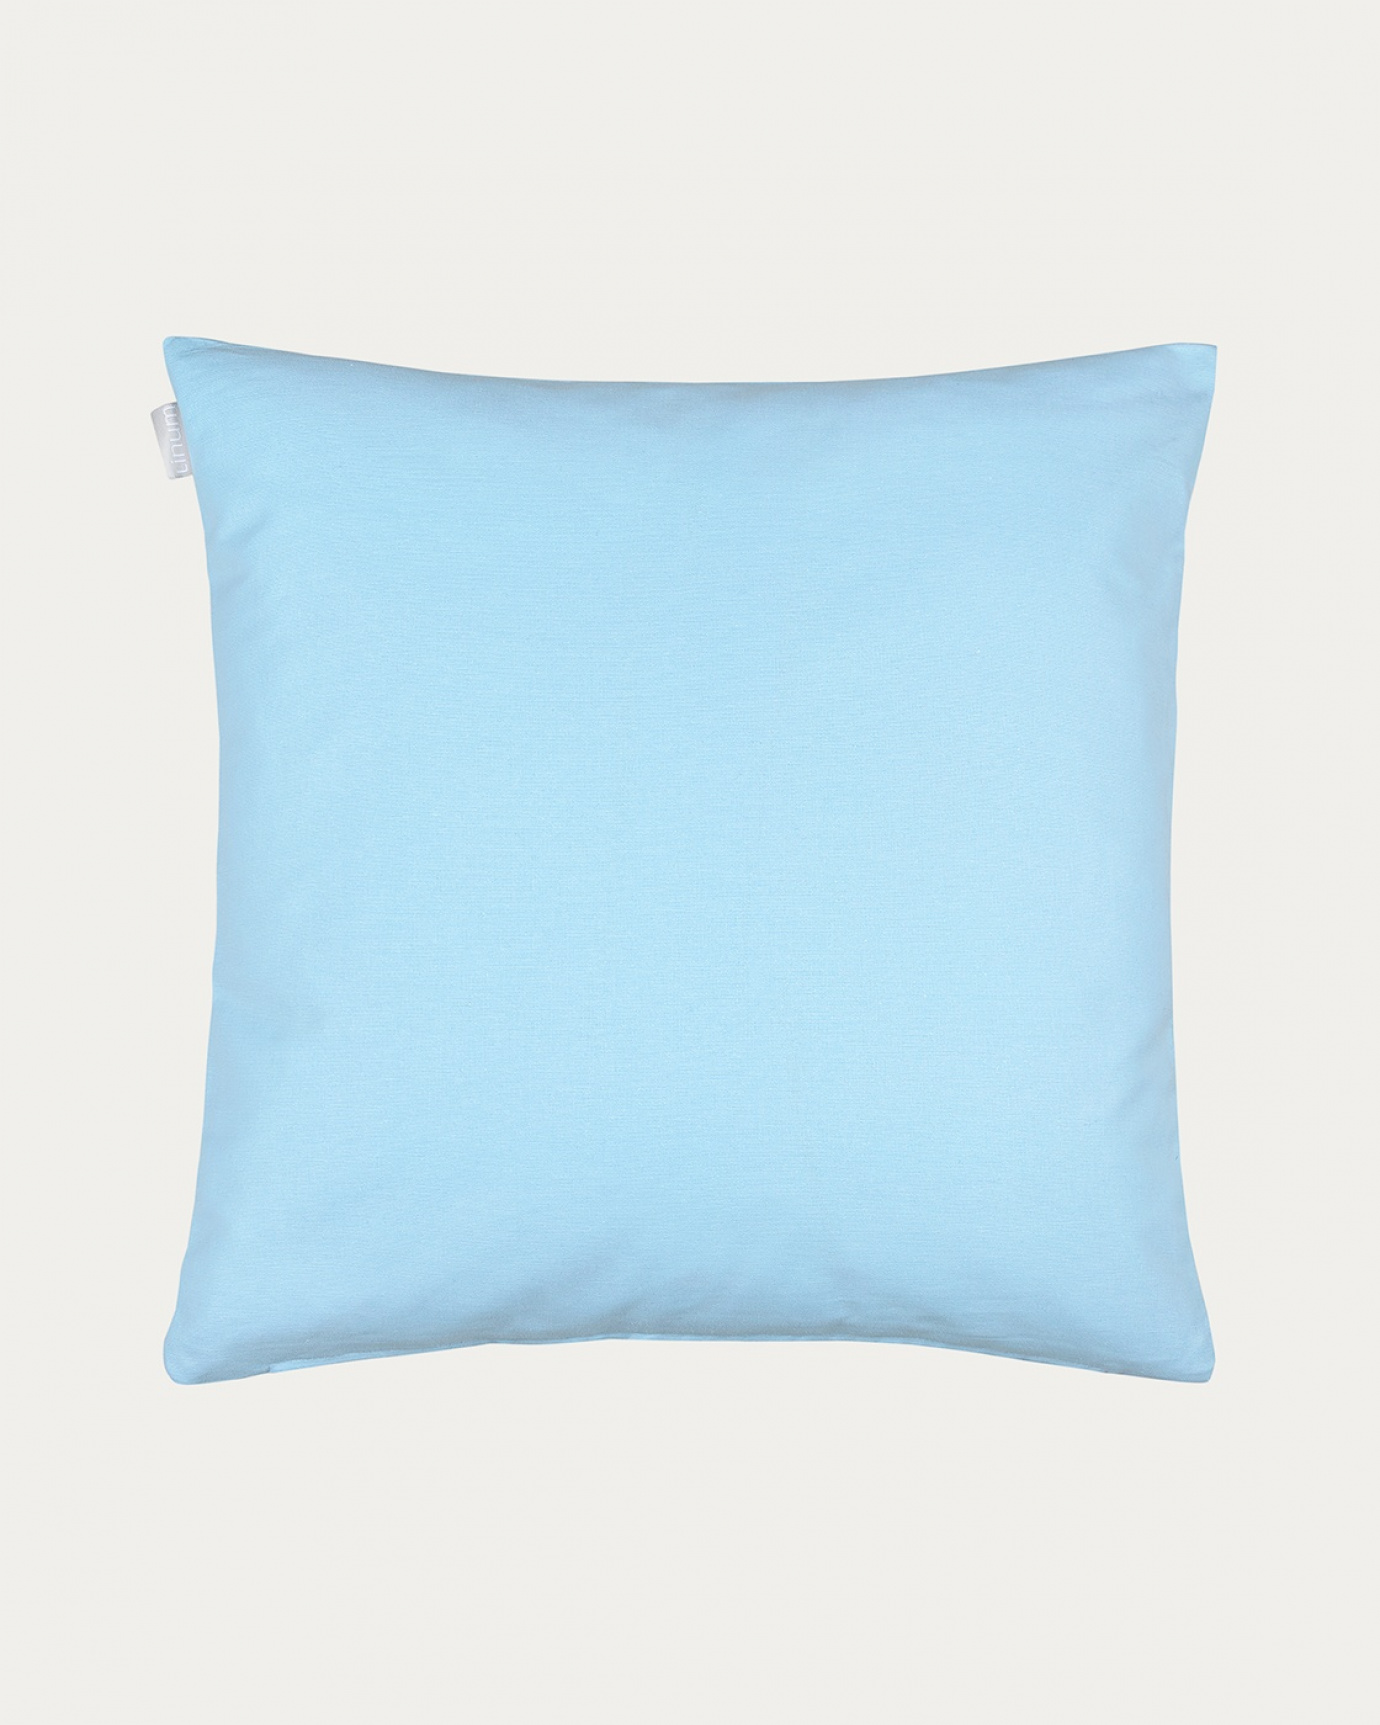 Image du produit housse de coussin ANNABELL ciel clair bleu en coton doux de LINUM DESIGN. Taille 50 x 50 cm.